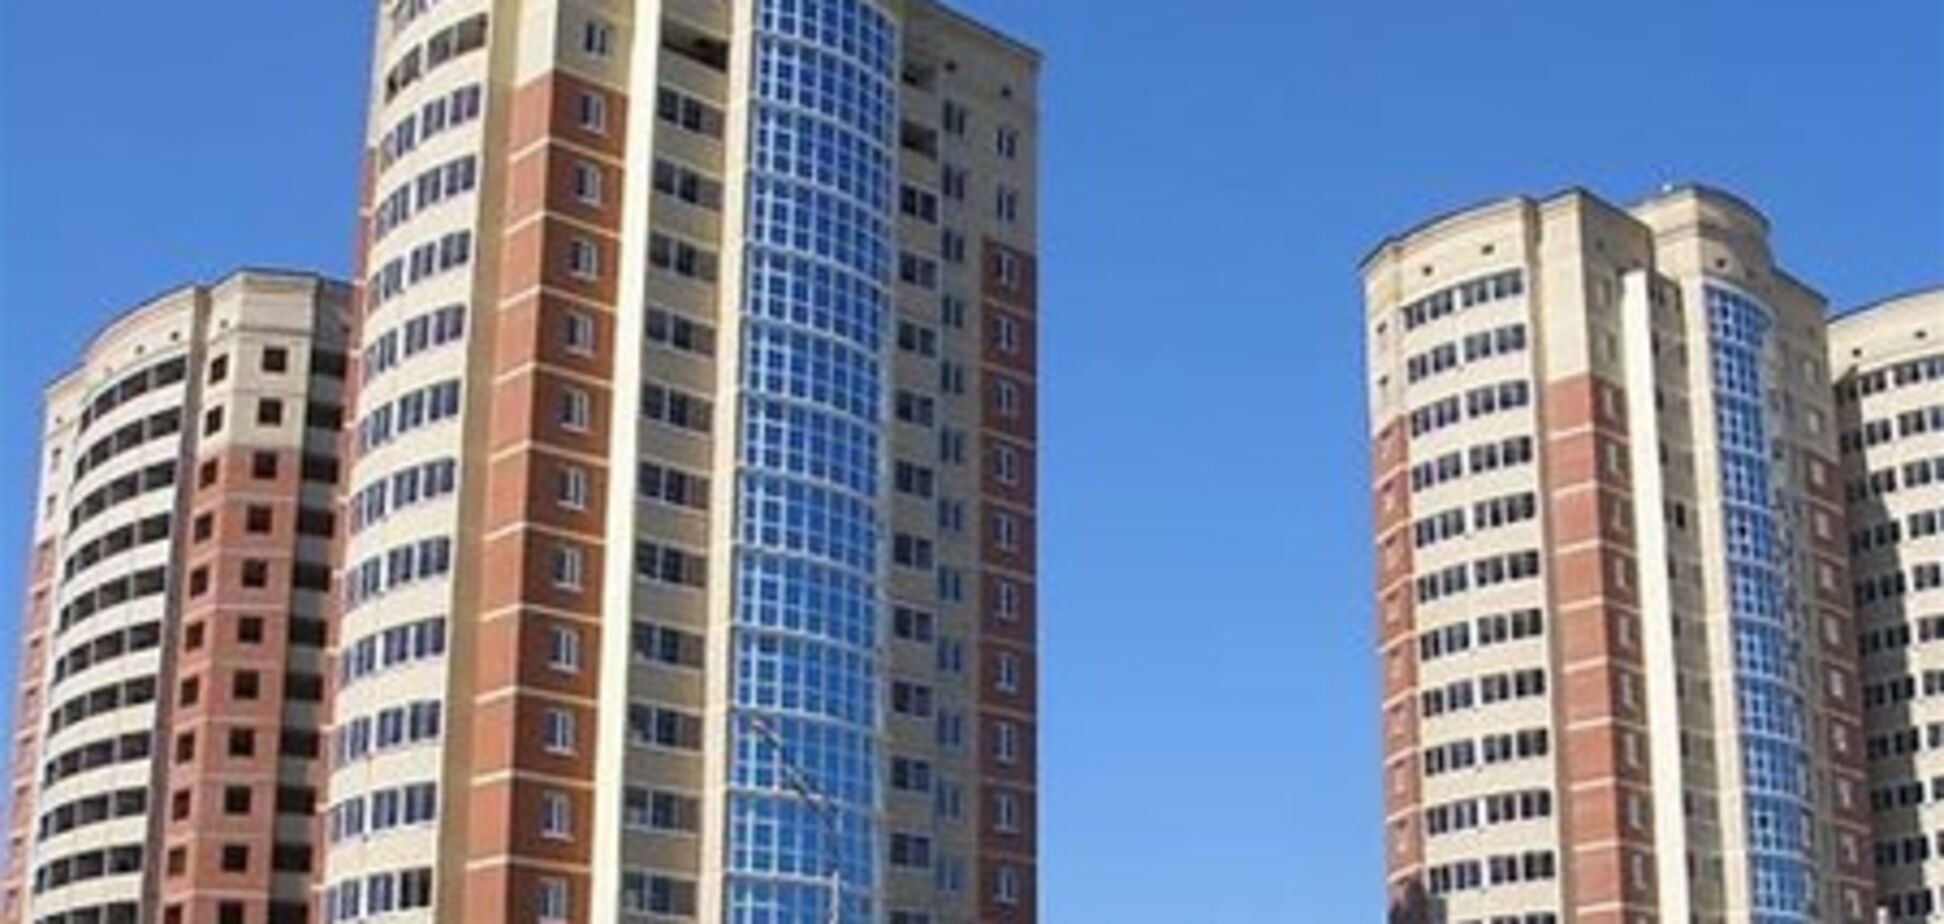 Более 2 тысяч квартир в сентябре арендовали в Киеве